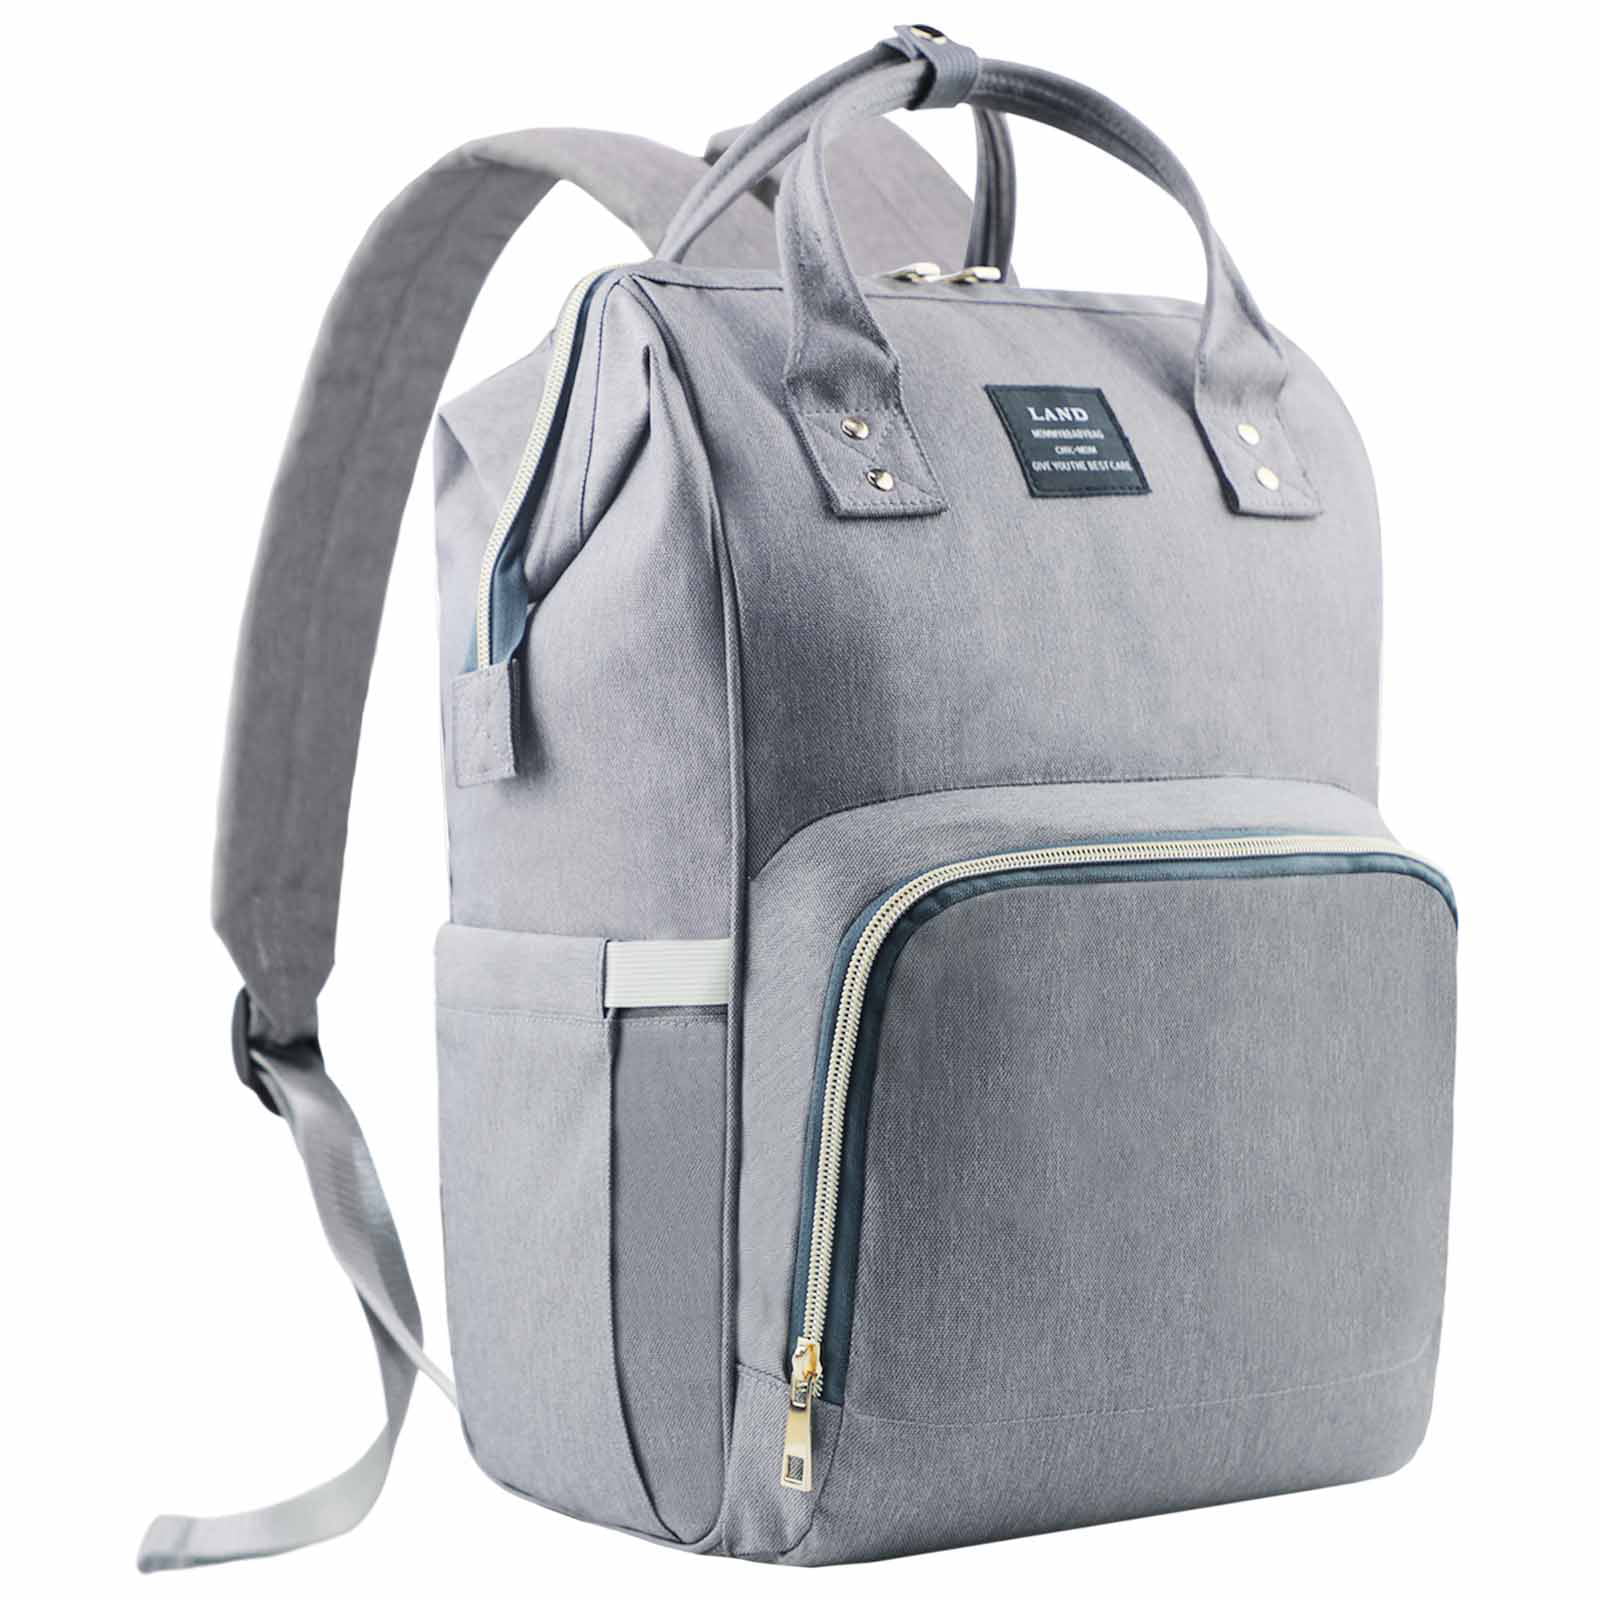 land nappy bag backpack